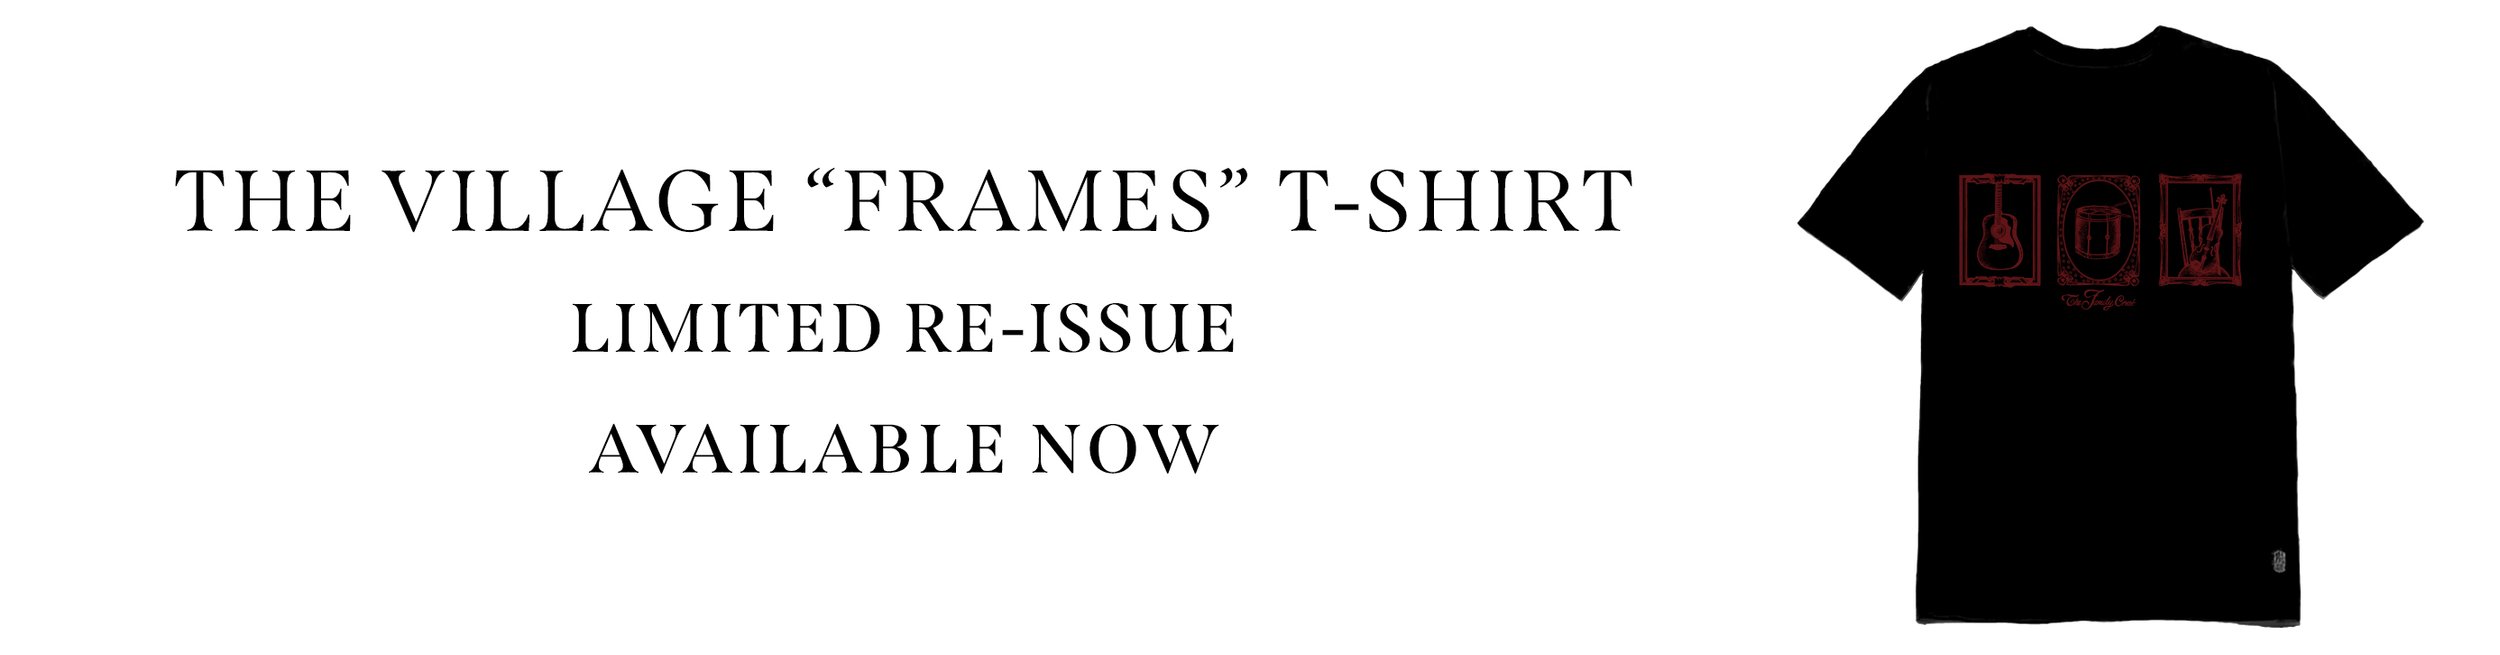 frames tshirt box.jpg